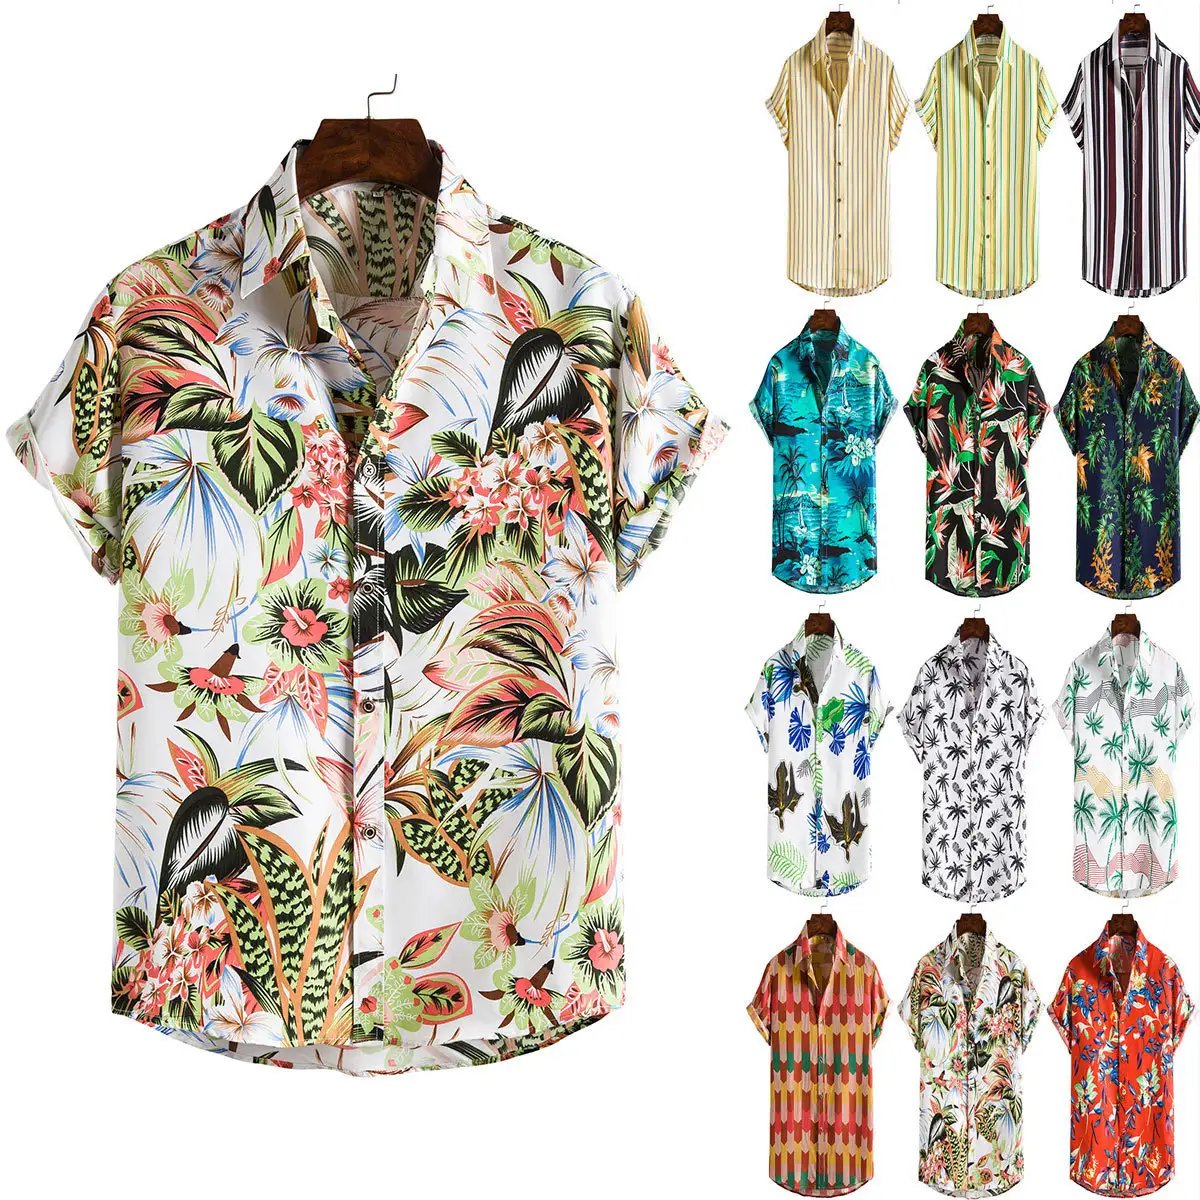 Camisa havaiana tropical de verão para homens, camisa casual de manga curta para praia do havaí, camisas florais